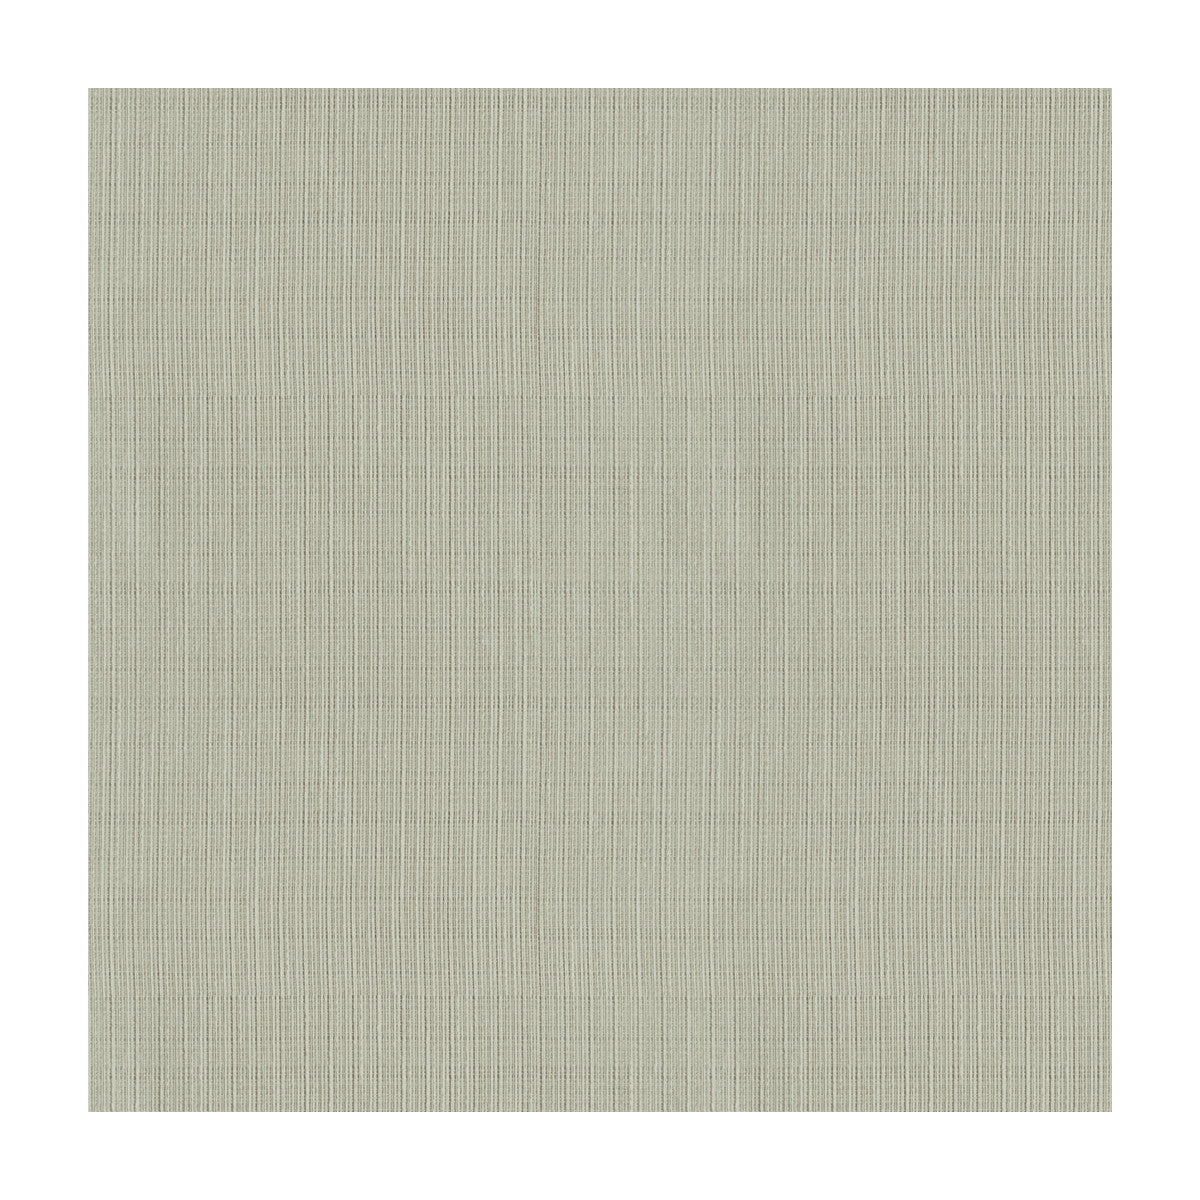 Kravet Basics fabric in 4116-11 color - pattern 4116.11.0 - by Kravet Basics